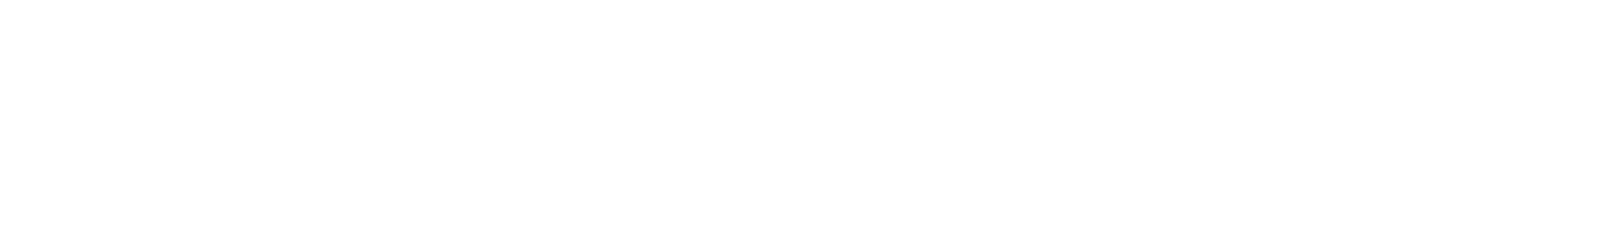 TSUTAYA RECORDS全店(オンライン含む/一部店舗除く)